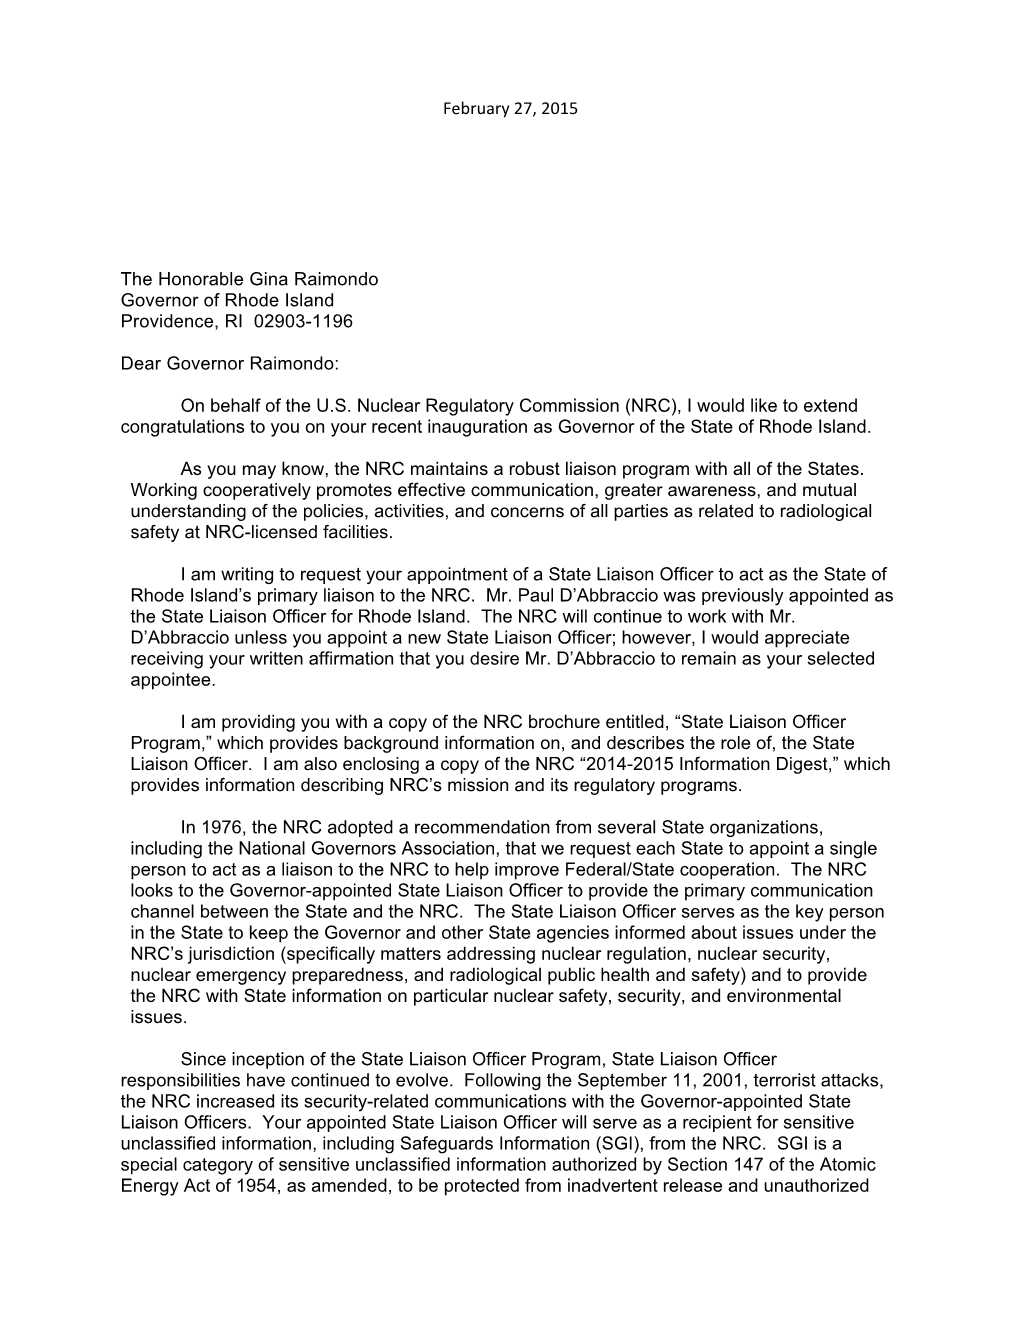 Letter to Rhode Island Governor Gina Raimondo Requesting Designation